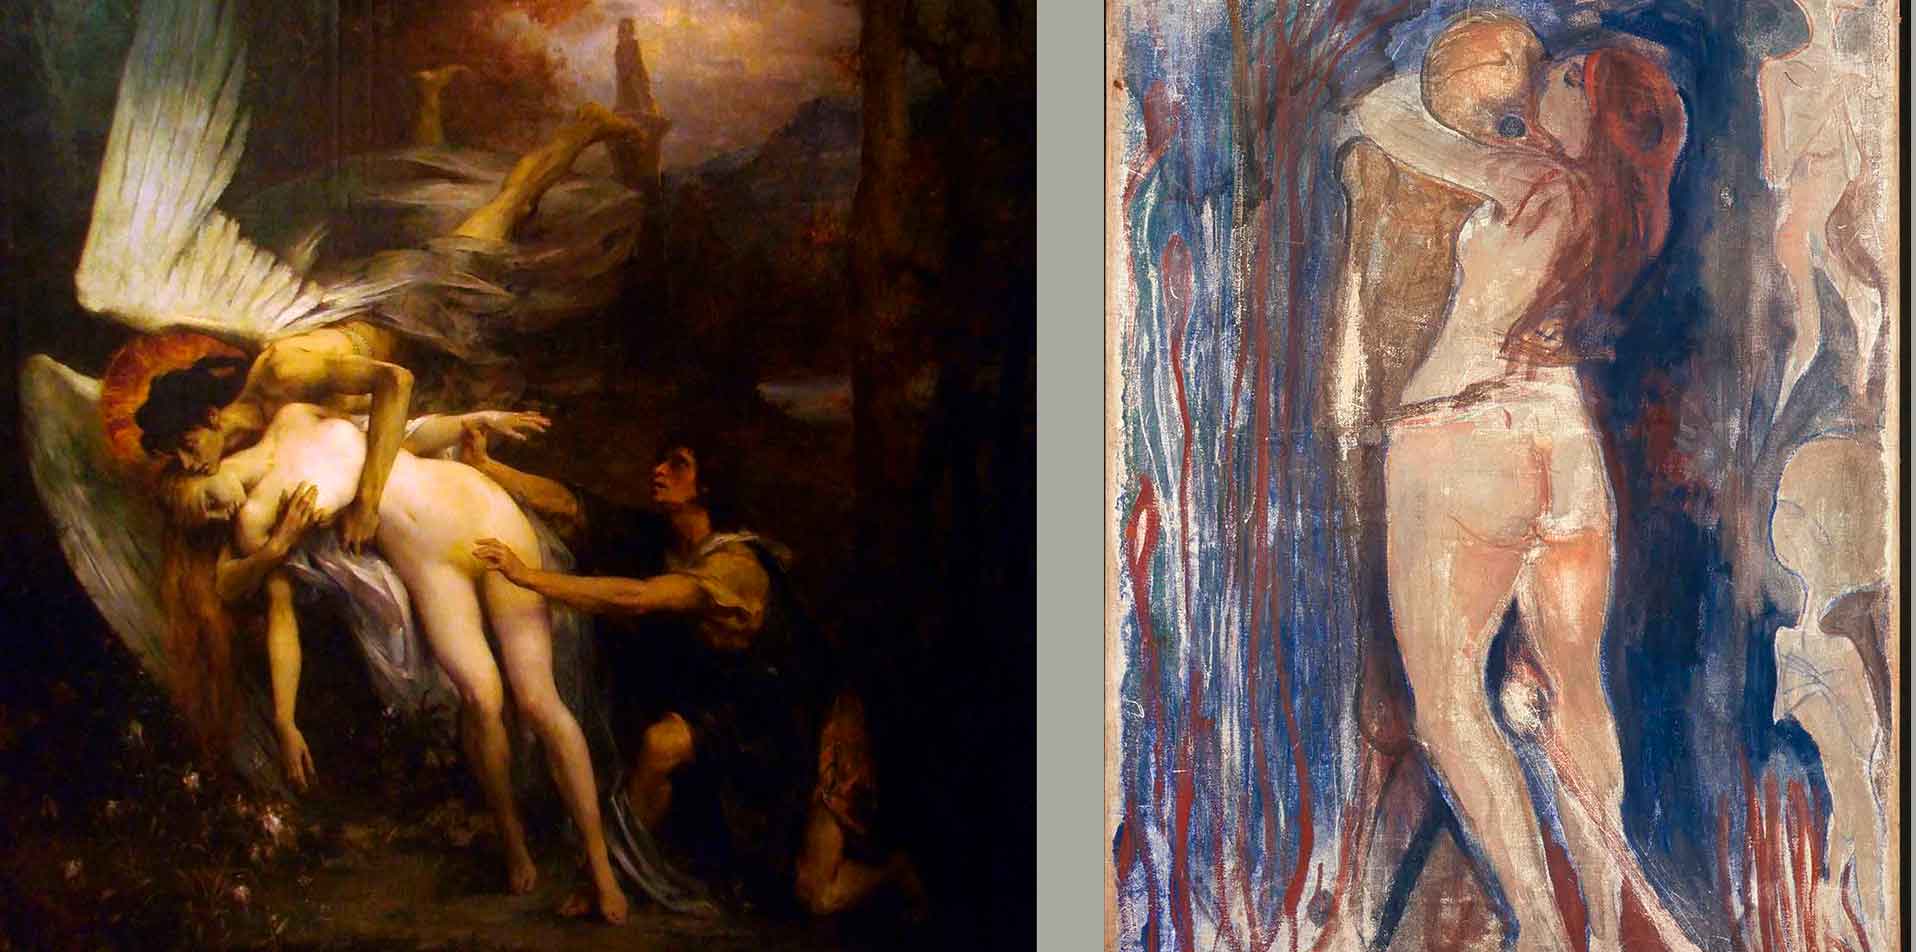 Fragmentos de las obras, a la izquierda del pintor Henry Lévy que  firma La jeune fille et la mort (1900), mientras a la derecha se expone parte de Death and Life (Death and the Maiden) fechado en 1893-94 del artista noruego Edvard Munch.